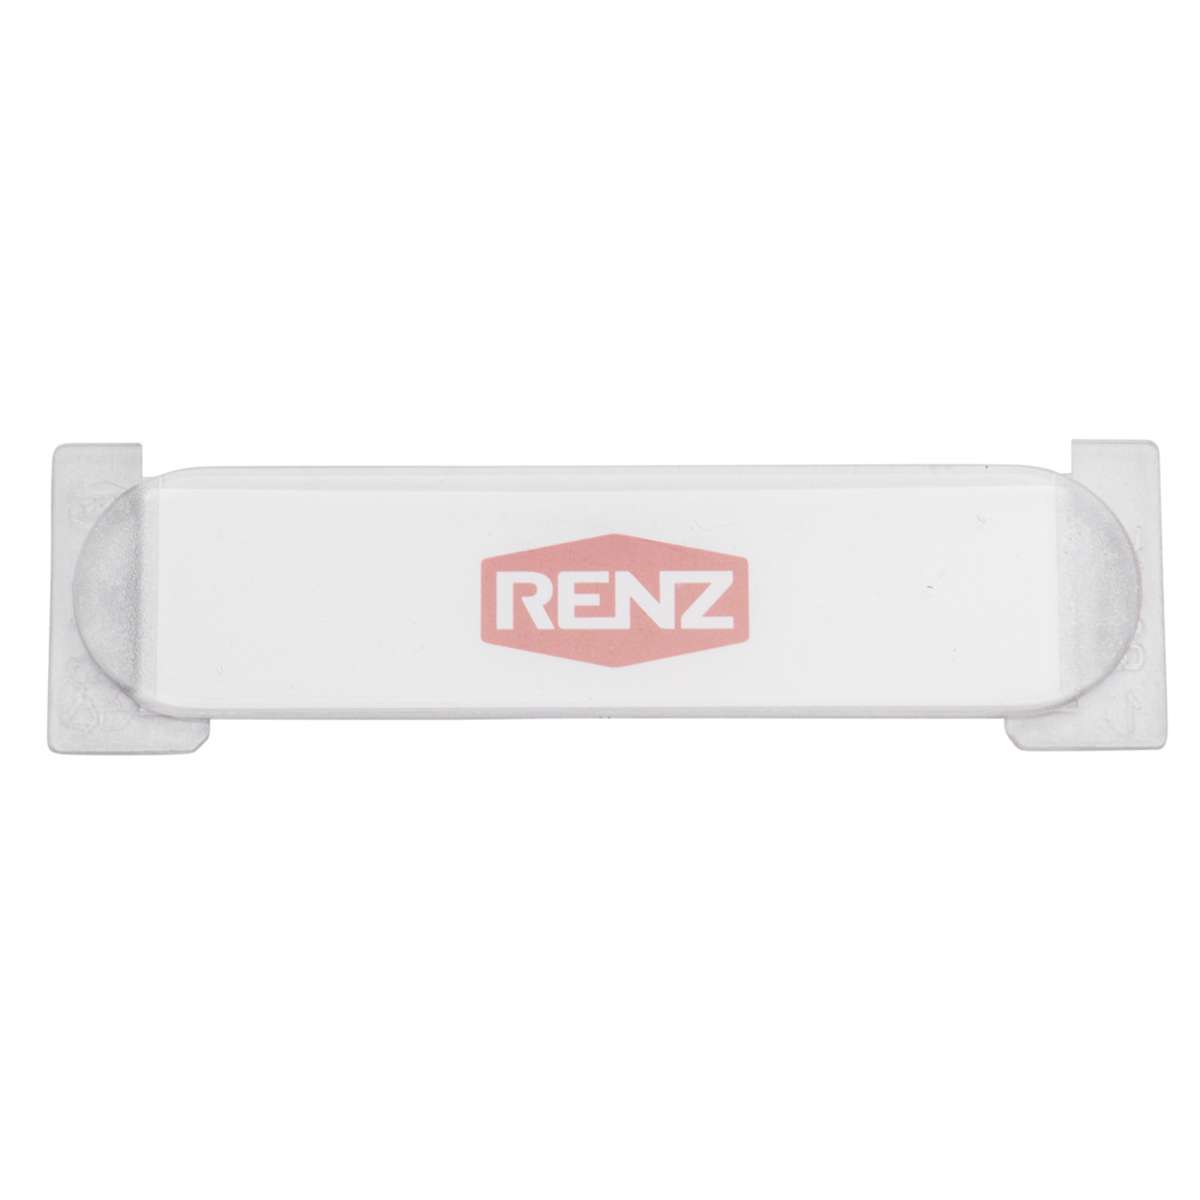 RENZ Kunststoff Transportnamensschild transparent 82250